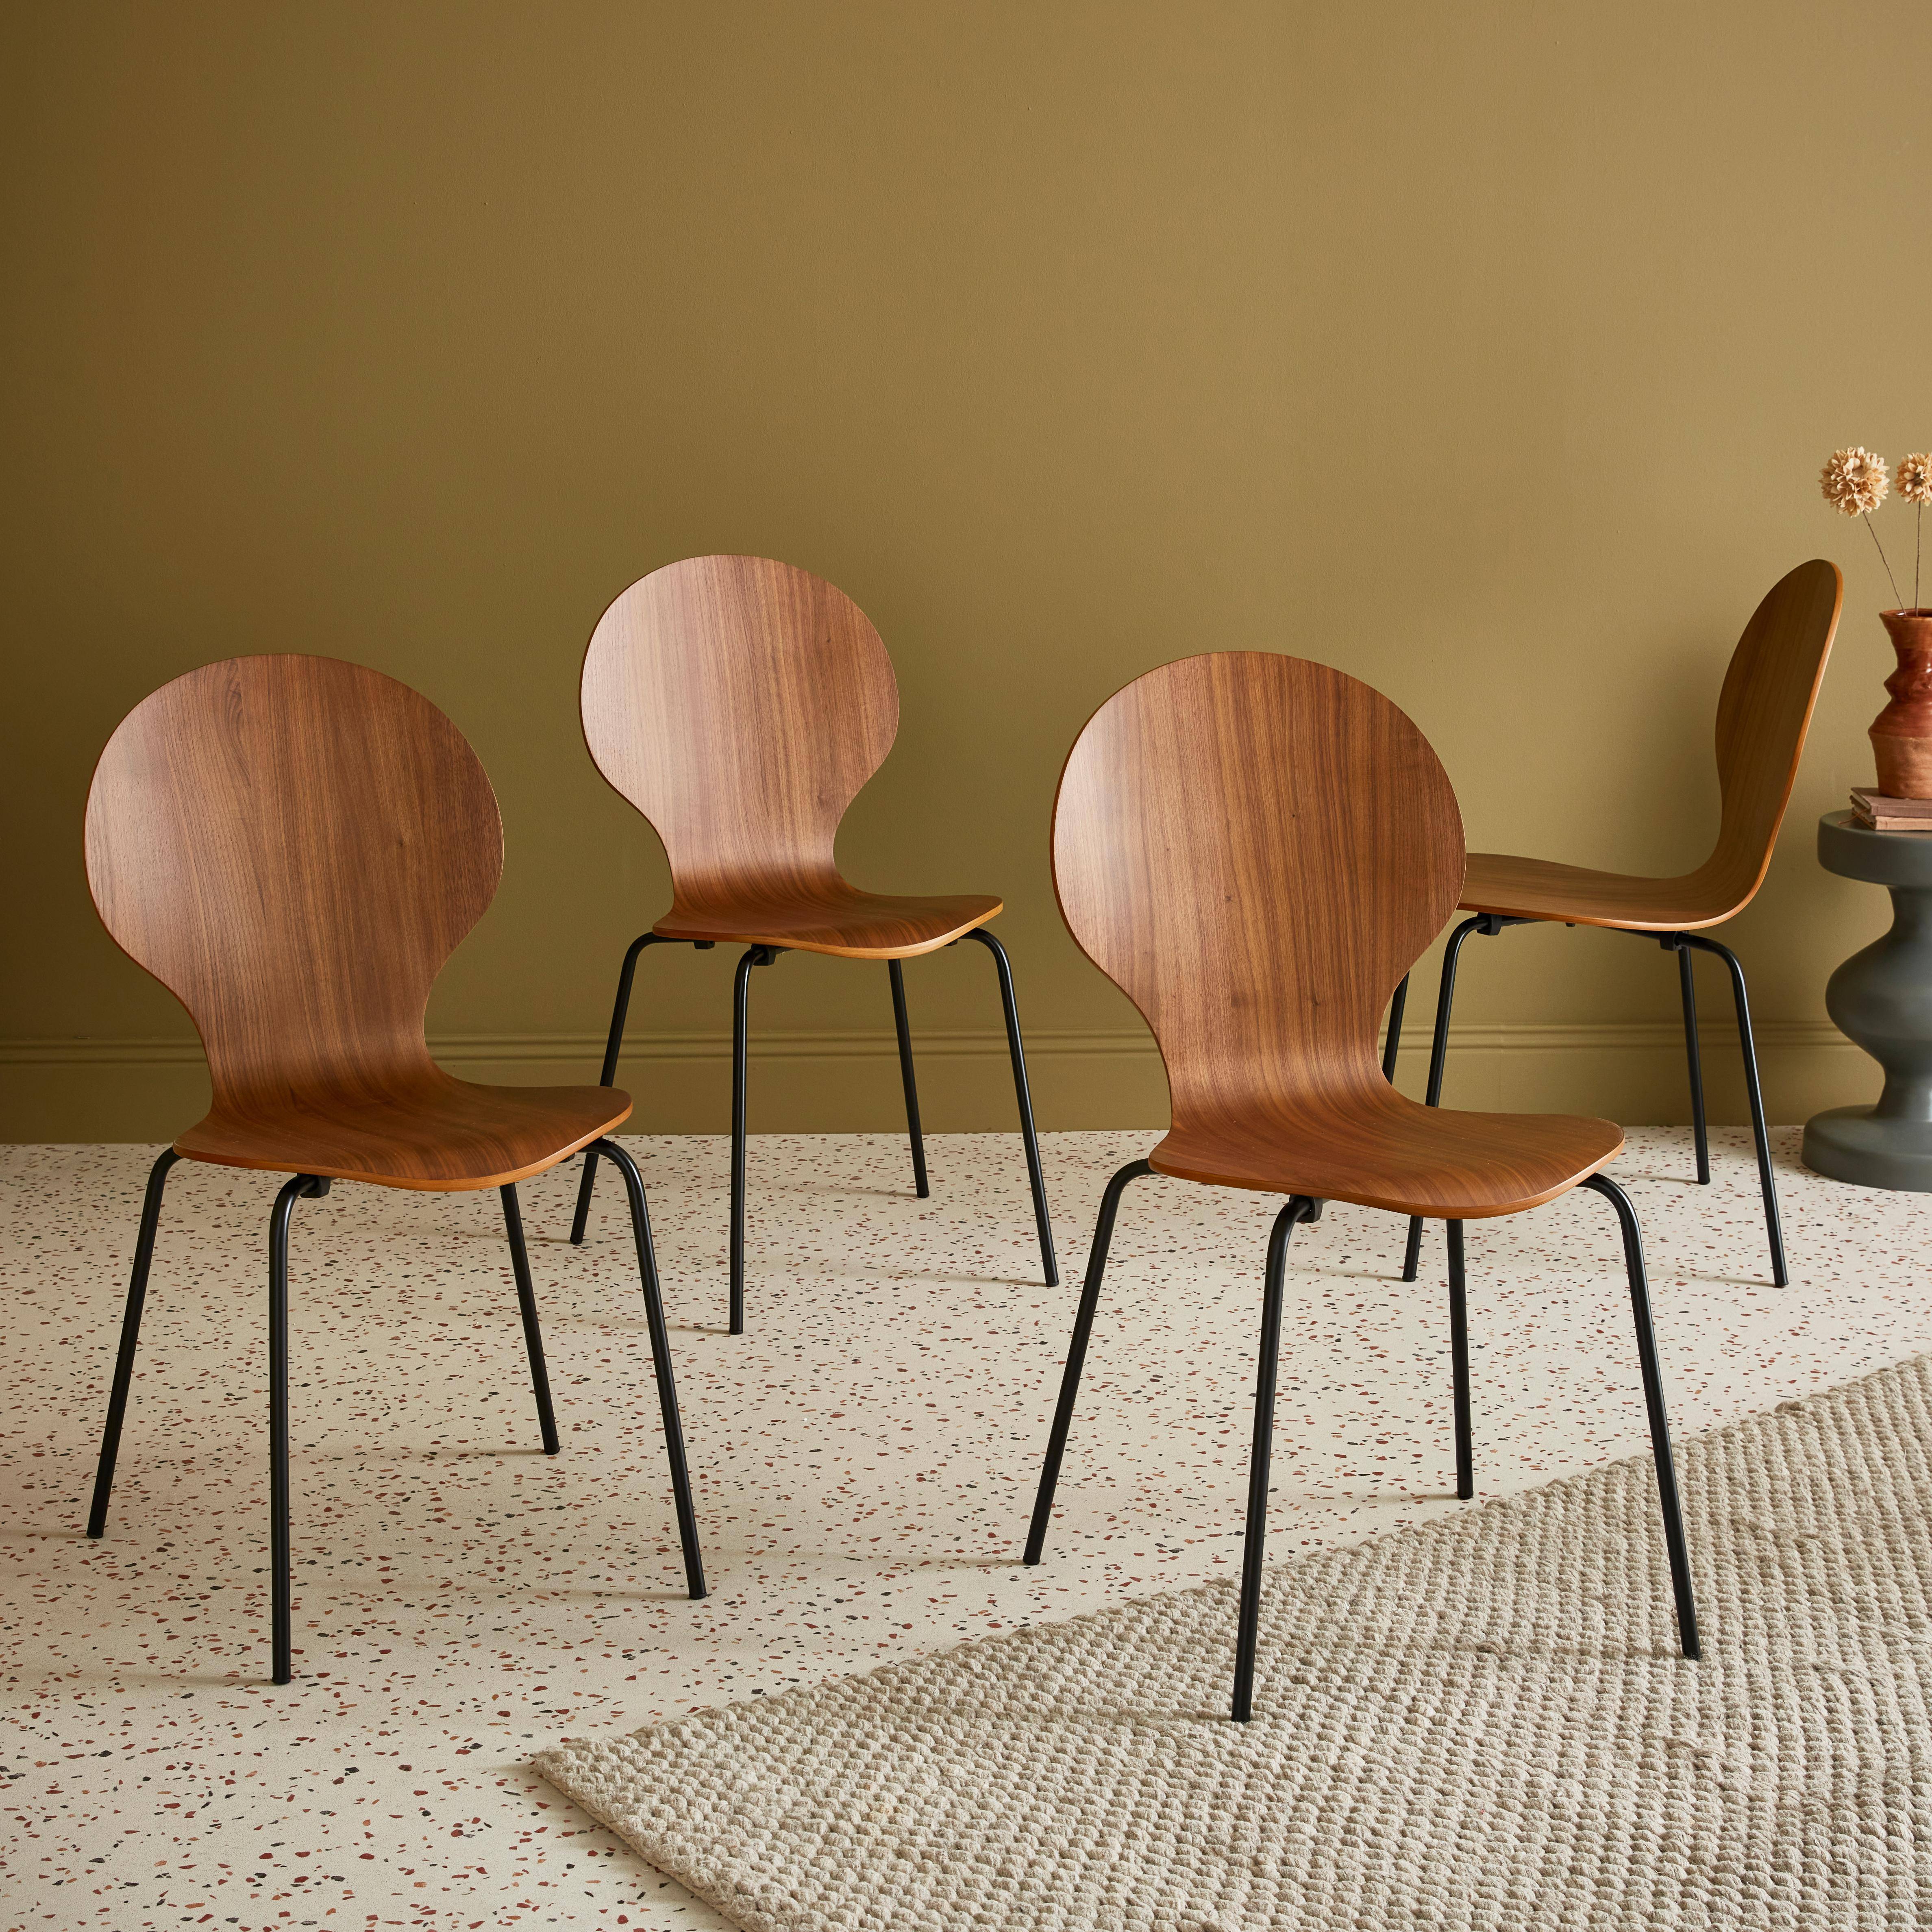 4er Set stapelbare Retro-Stühle in der Farbe Nussbaum,  Hevea-Holz und Sperrholz, Beine aus Stahl, Naomi, B 43 x T 48 x H 87cm,sweeek,Photo1